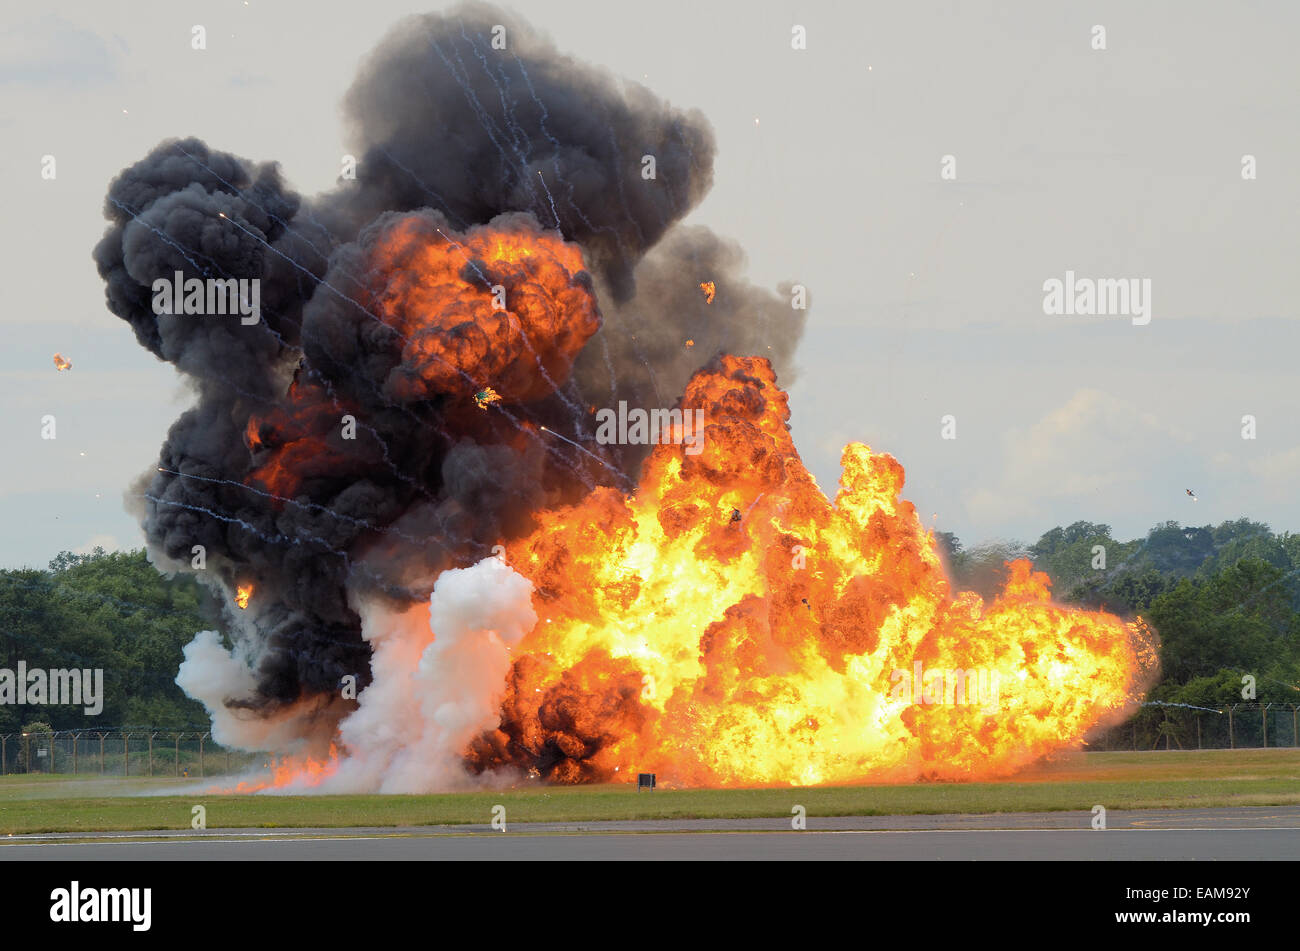 Eine pyrotechnische Explosion auf einem Flugplatz, eine Bombe zu illustrieren. Feuer und Rauch von der Zündung Stockfoto